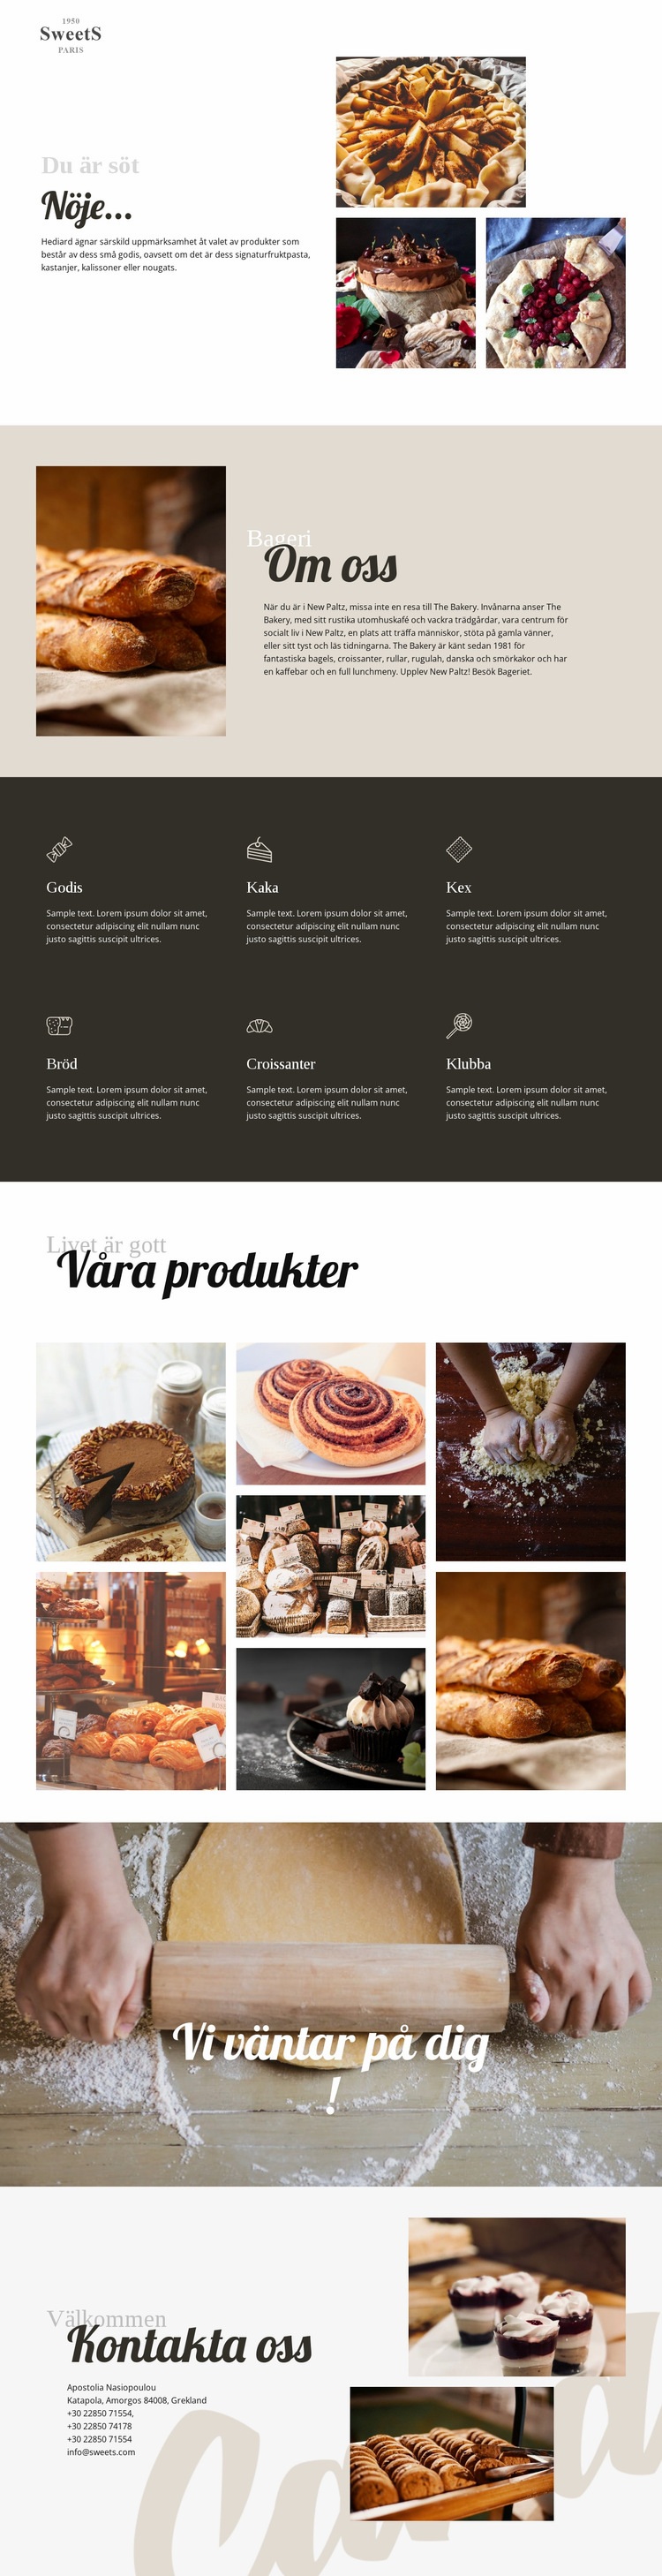 Kakor och bakning av mat Webbplats mall